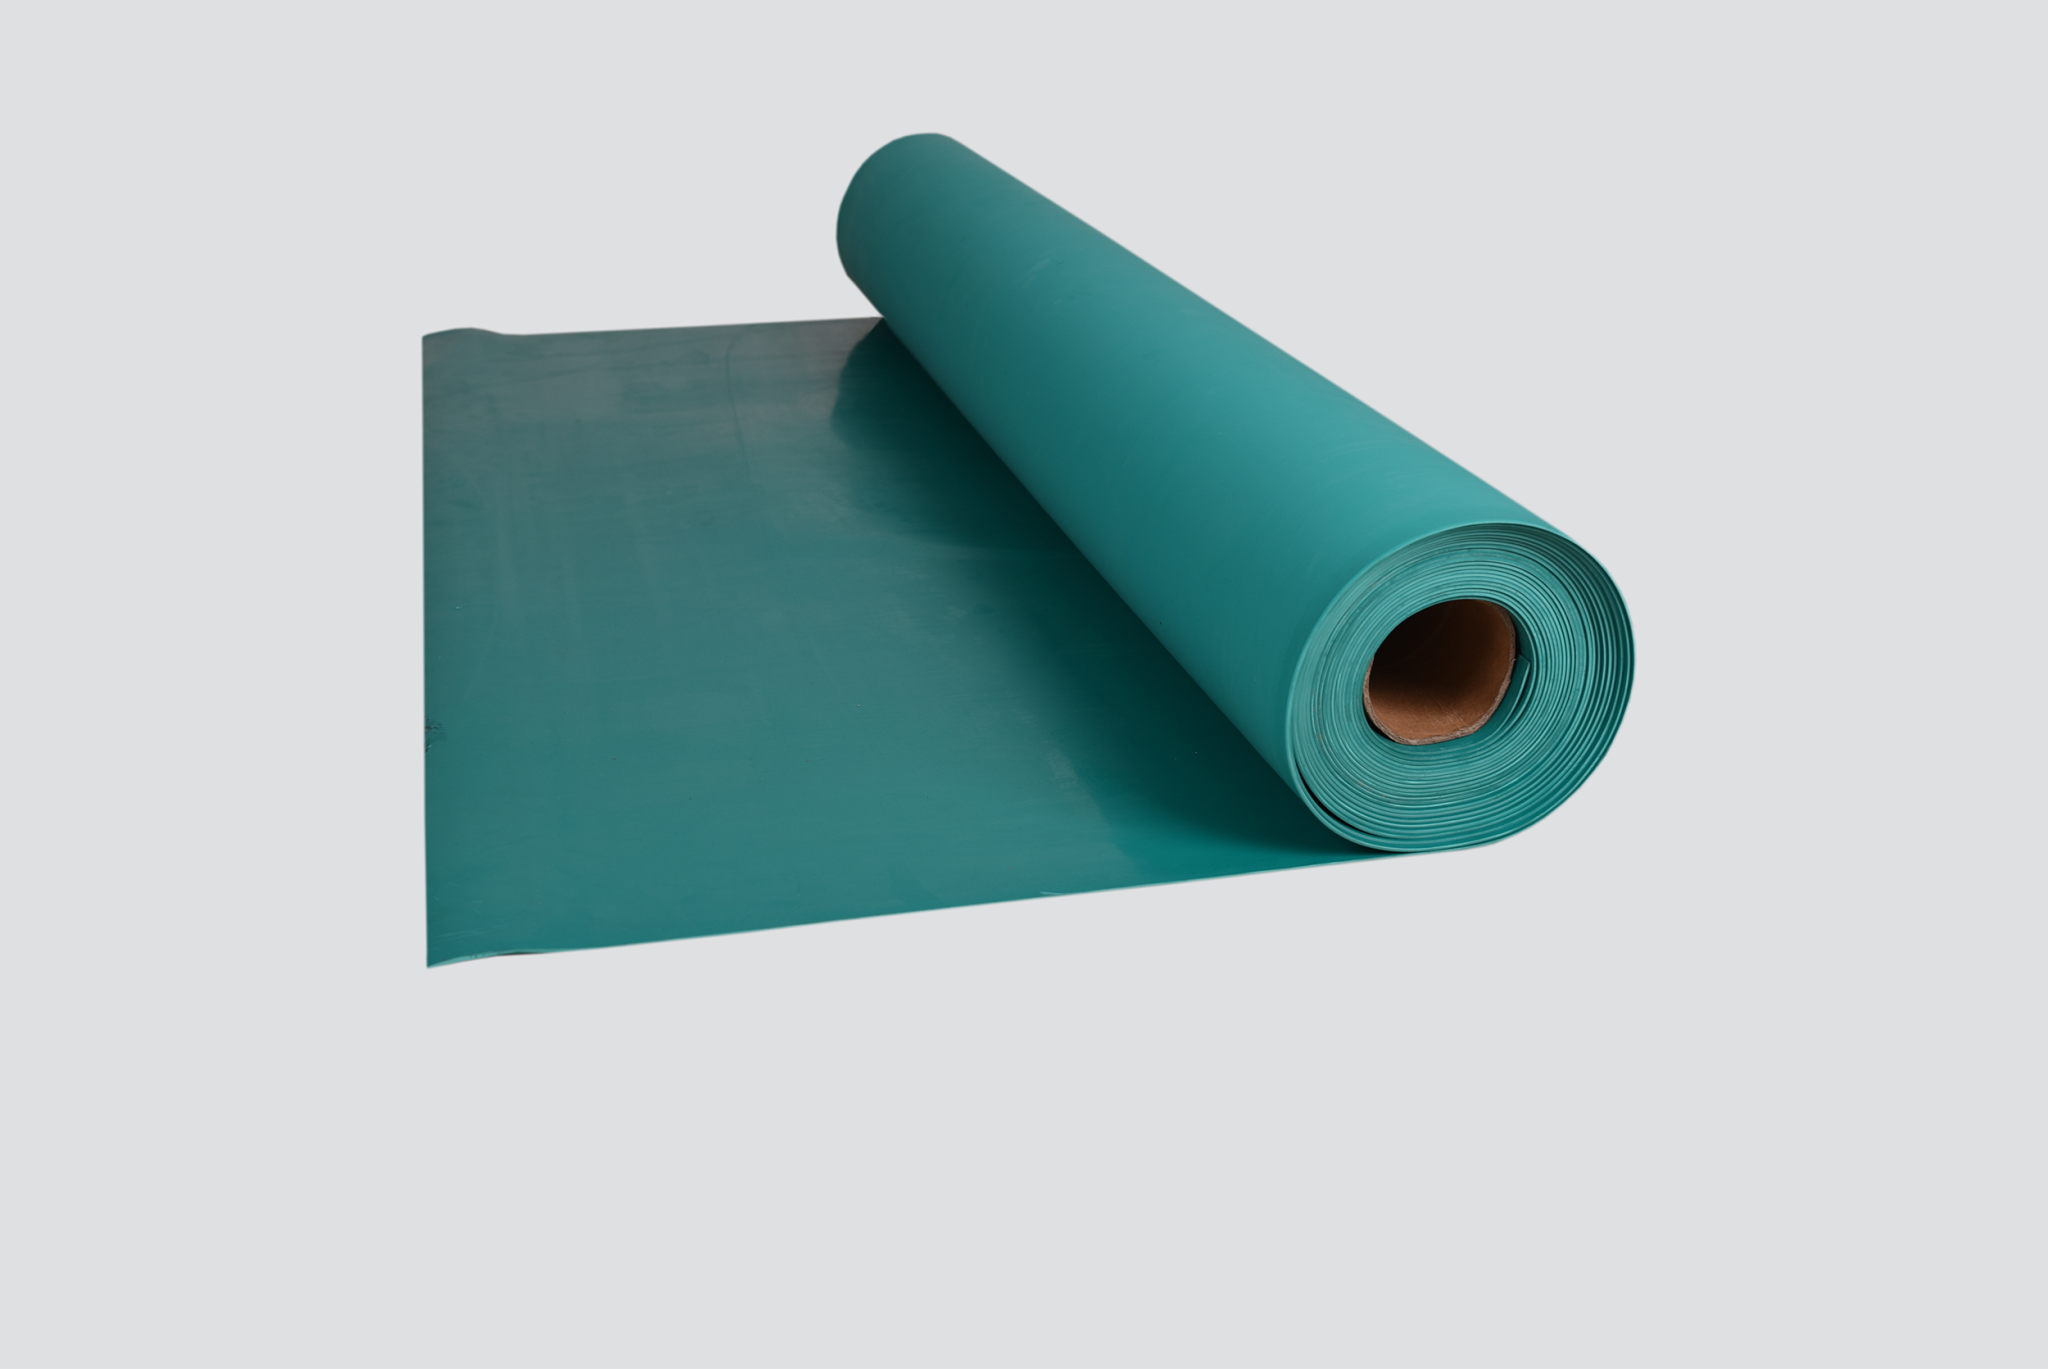 All green environmental protection platform mat YY-A1018